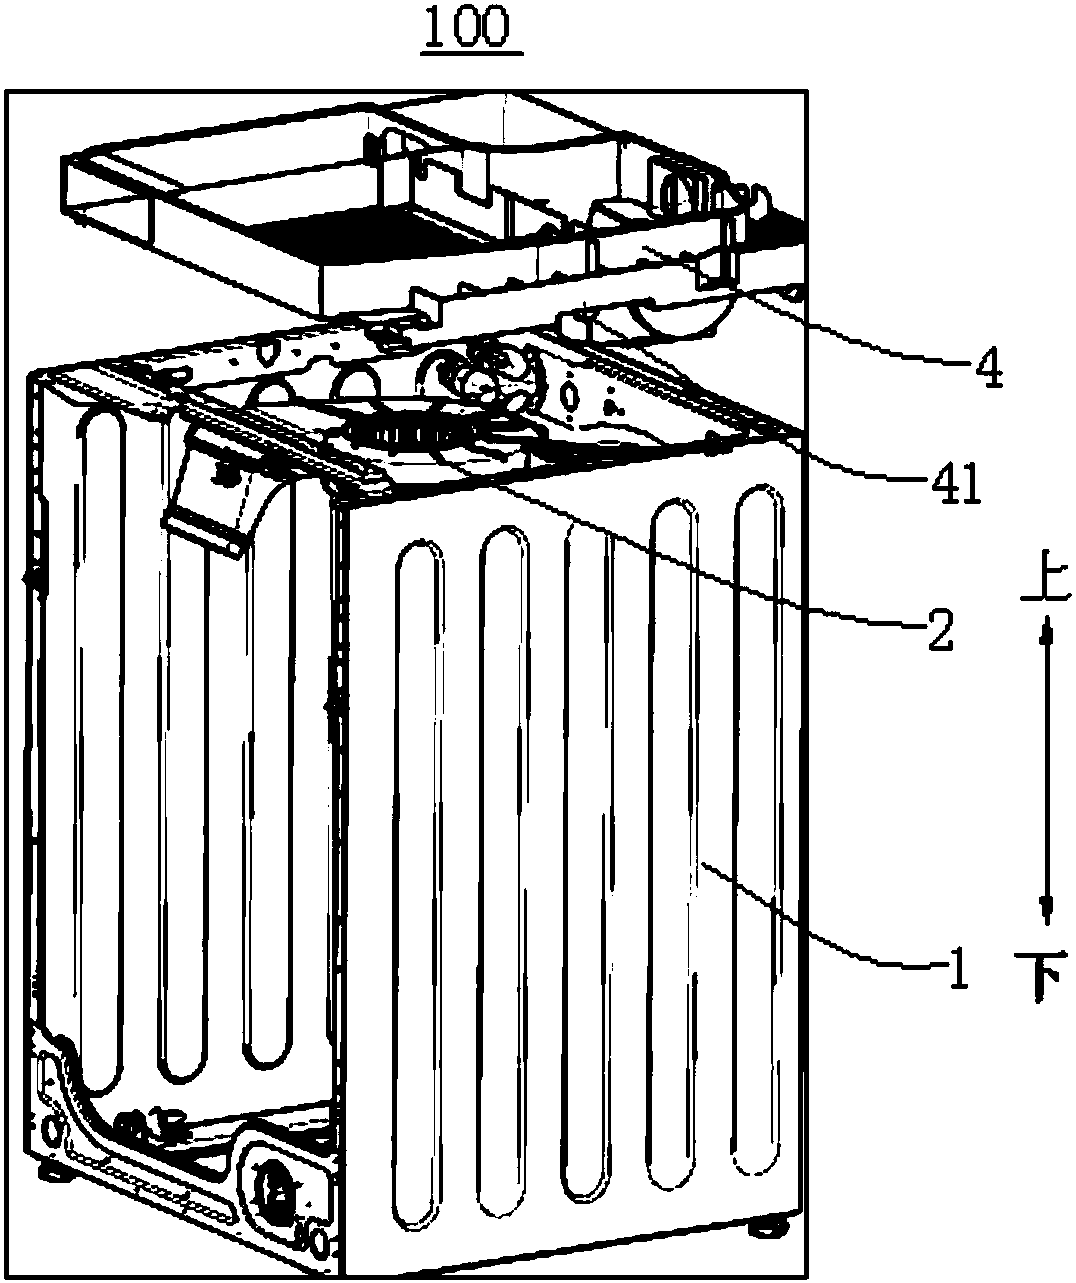 Heat pump clothes dryer or heat pump washer-dryer